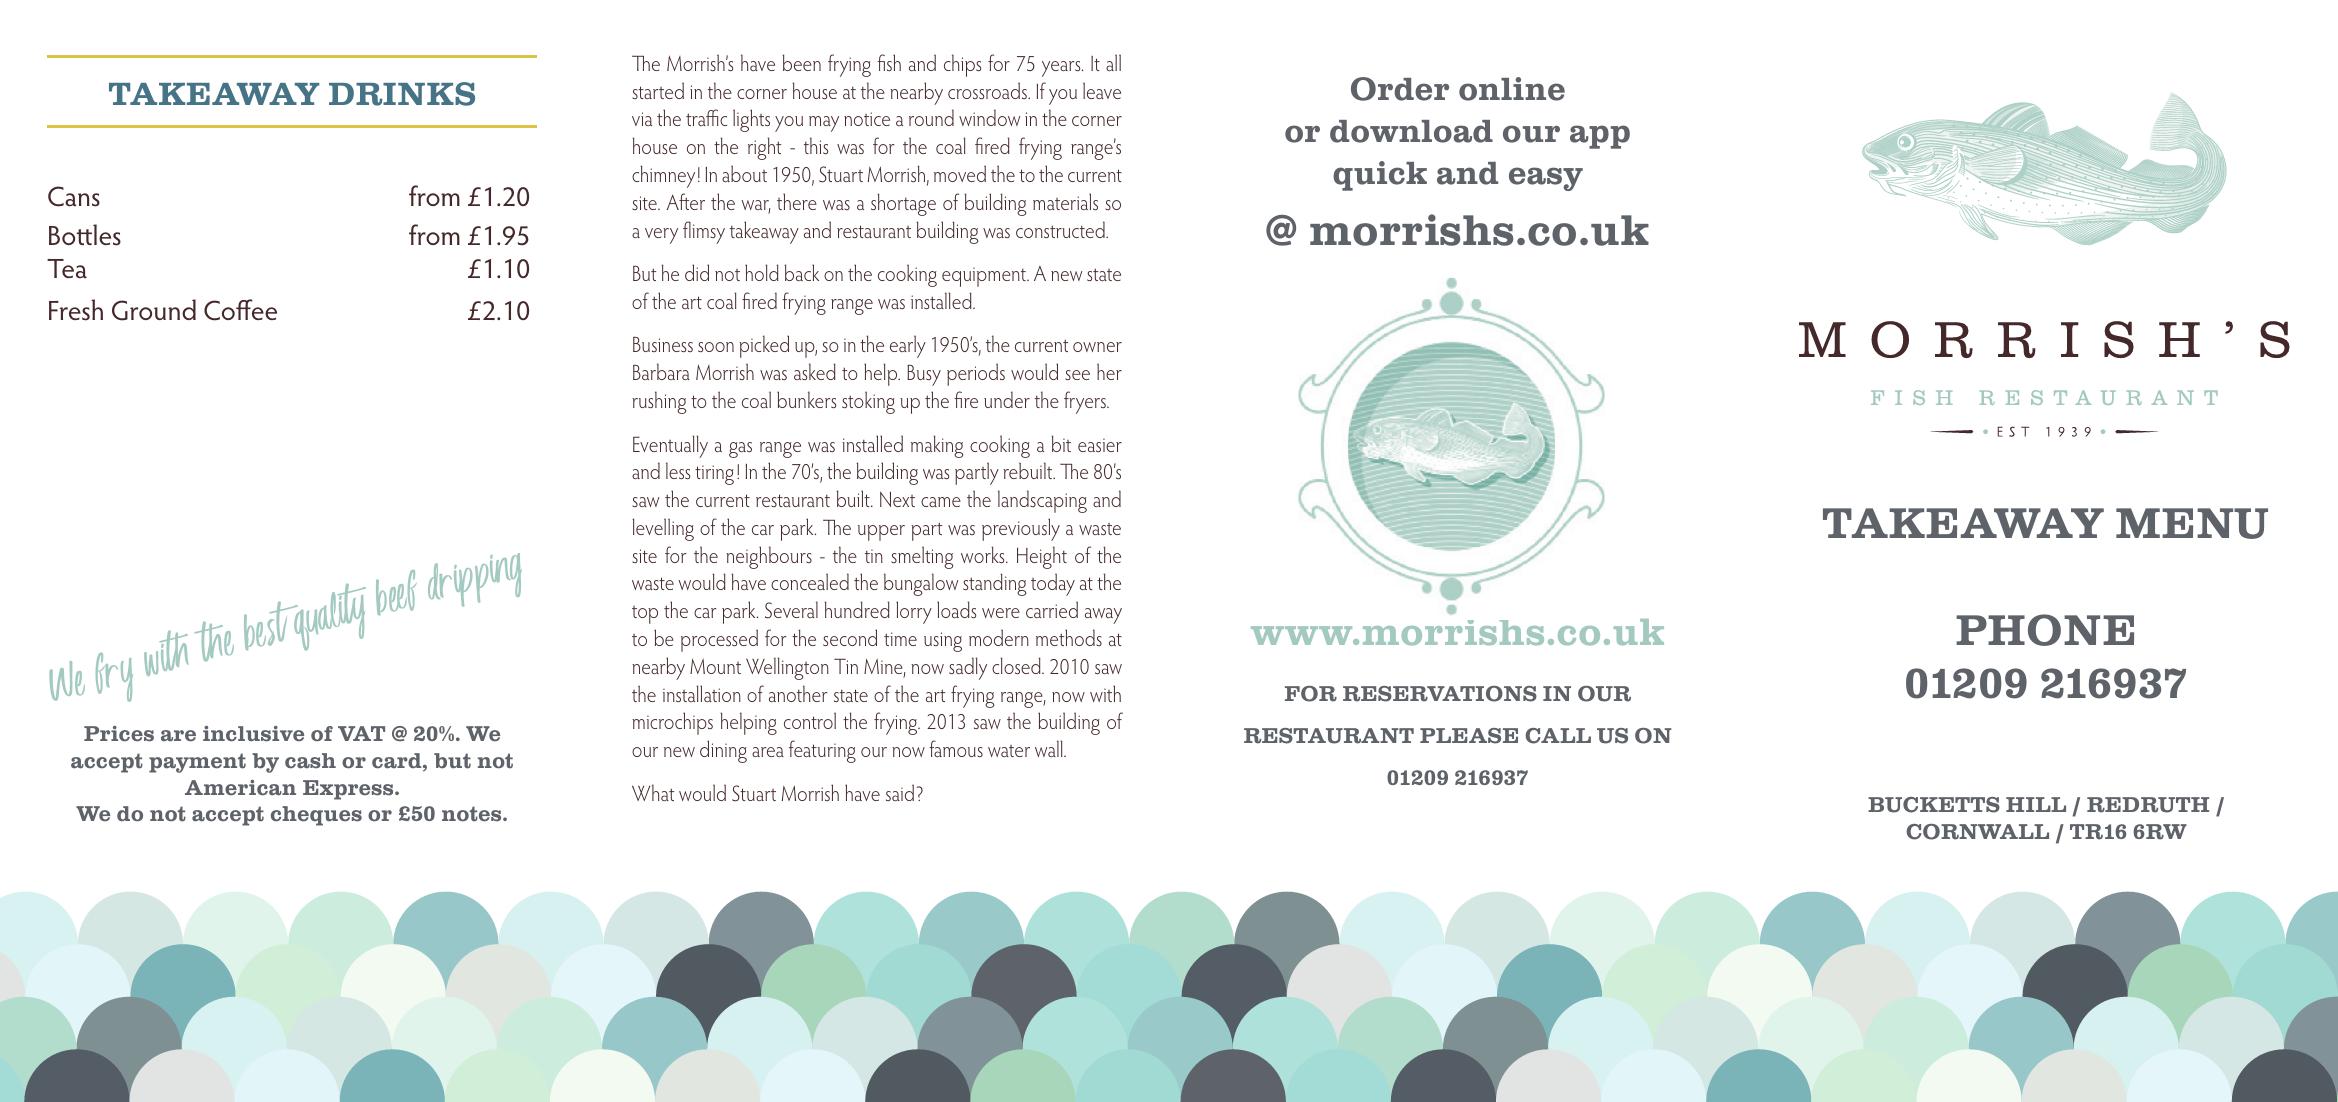 Morrish’s Fish Restaurant and Take Away - main menu